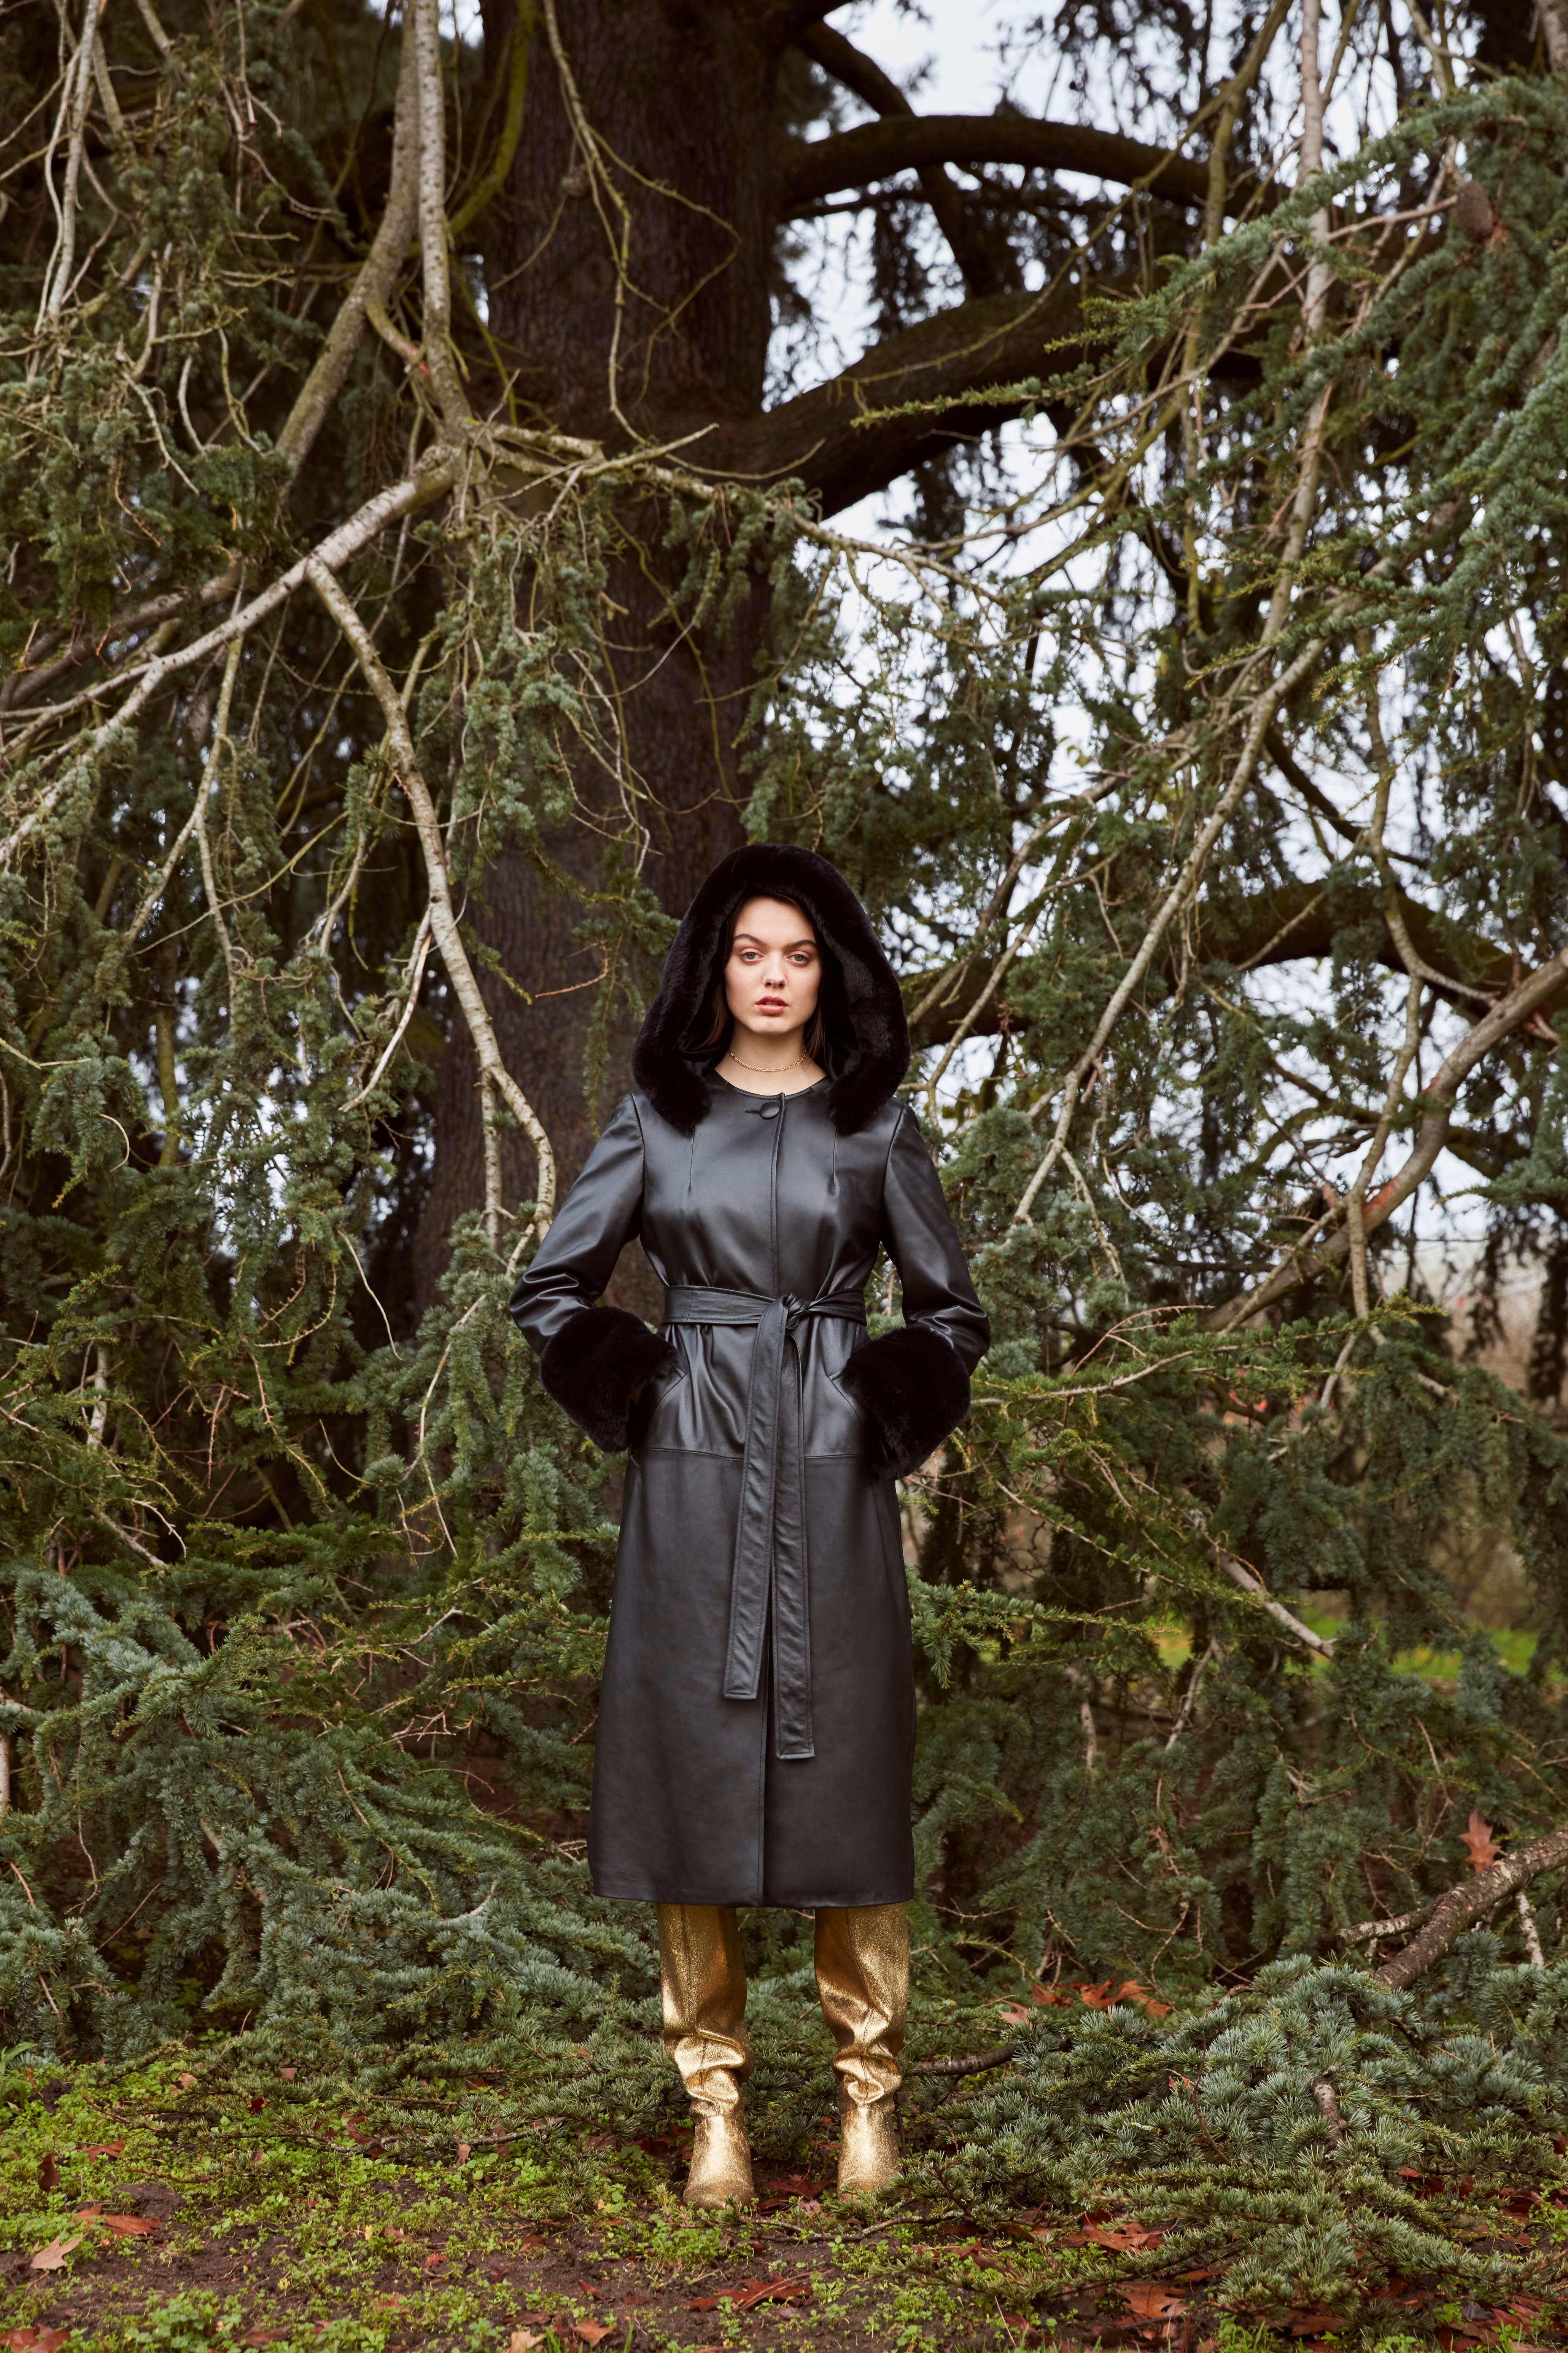 Women's Verheyen London Hooded Leather Trench Coat in Black with Faux Fur - Size uk 8